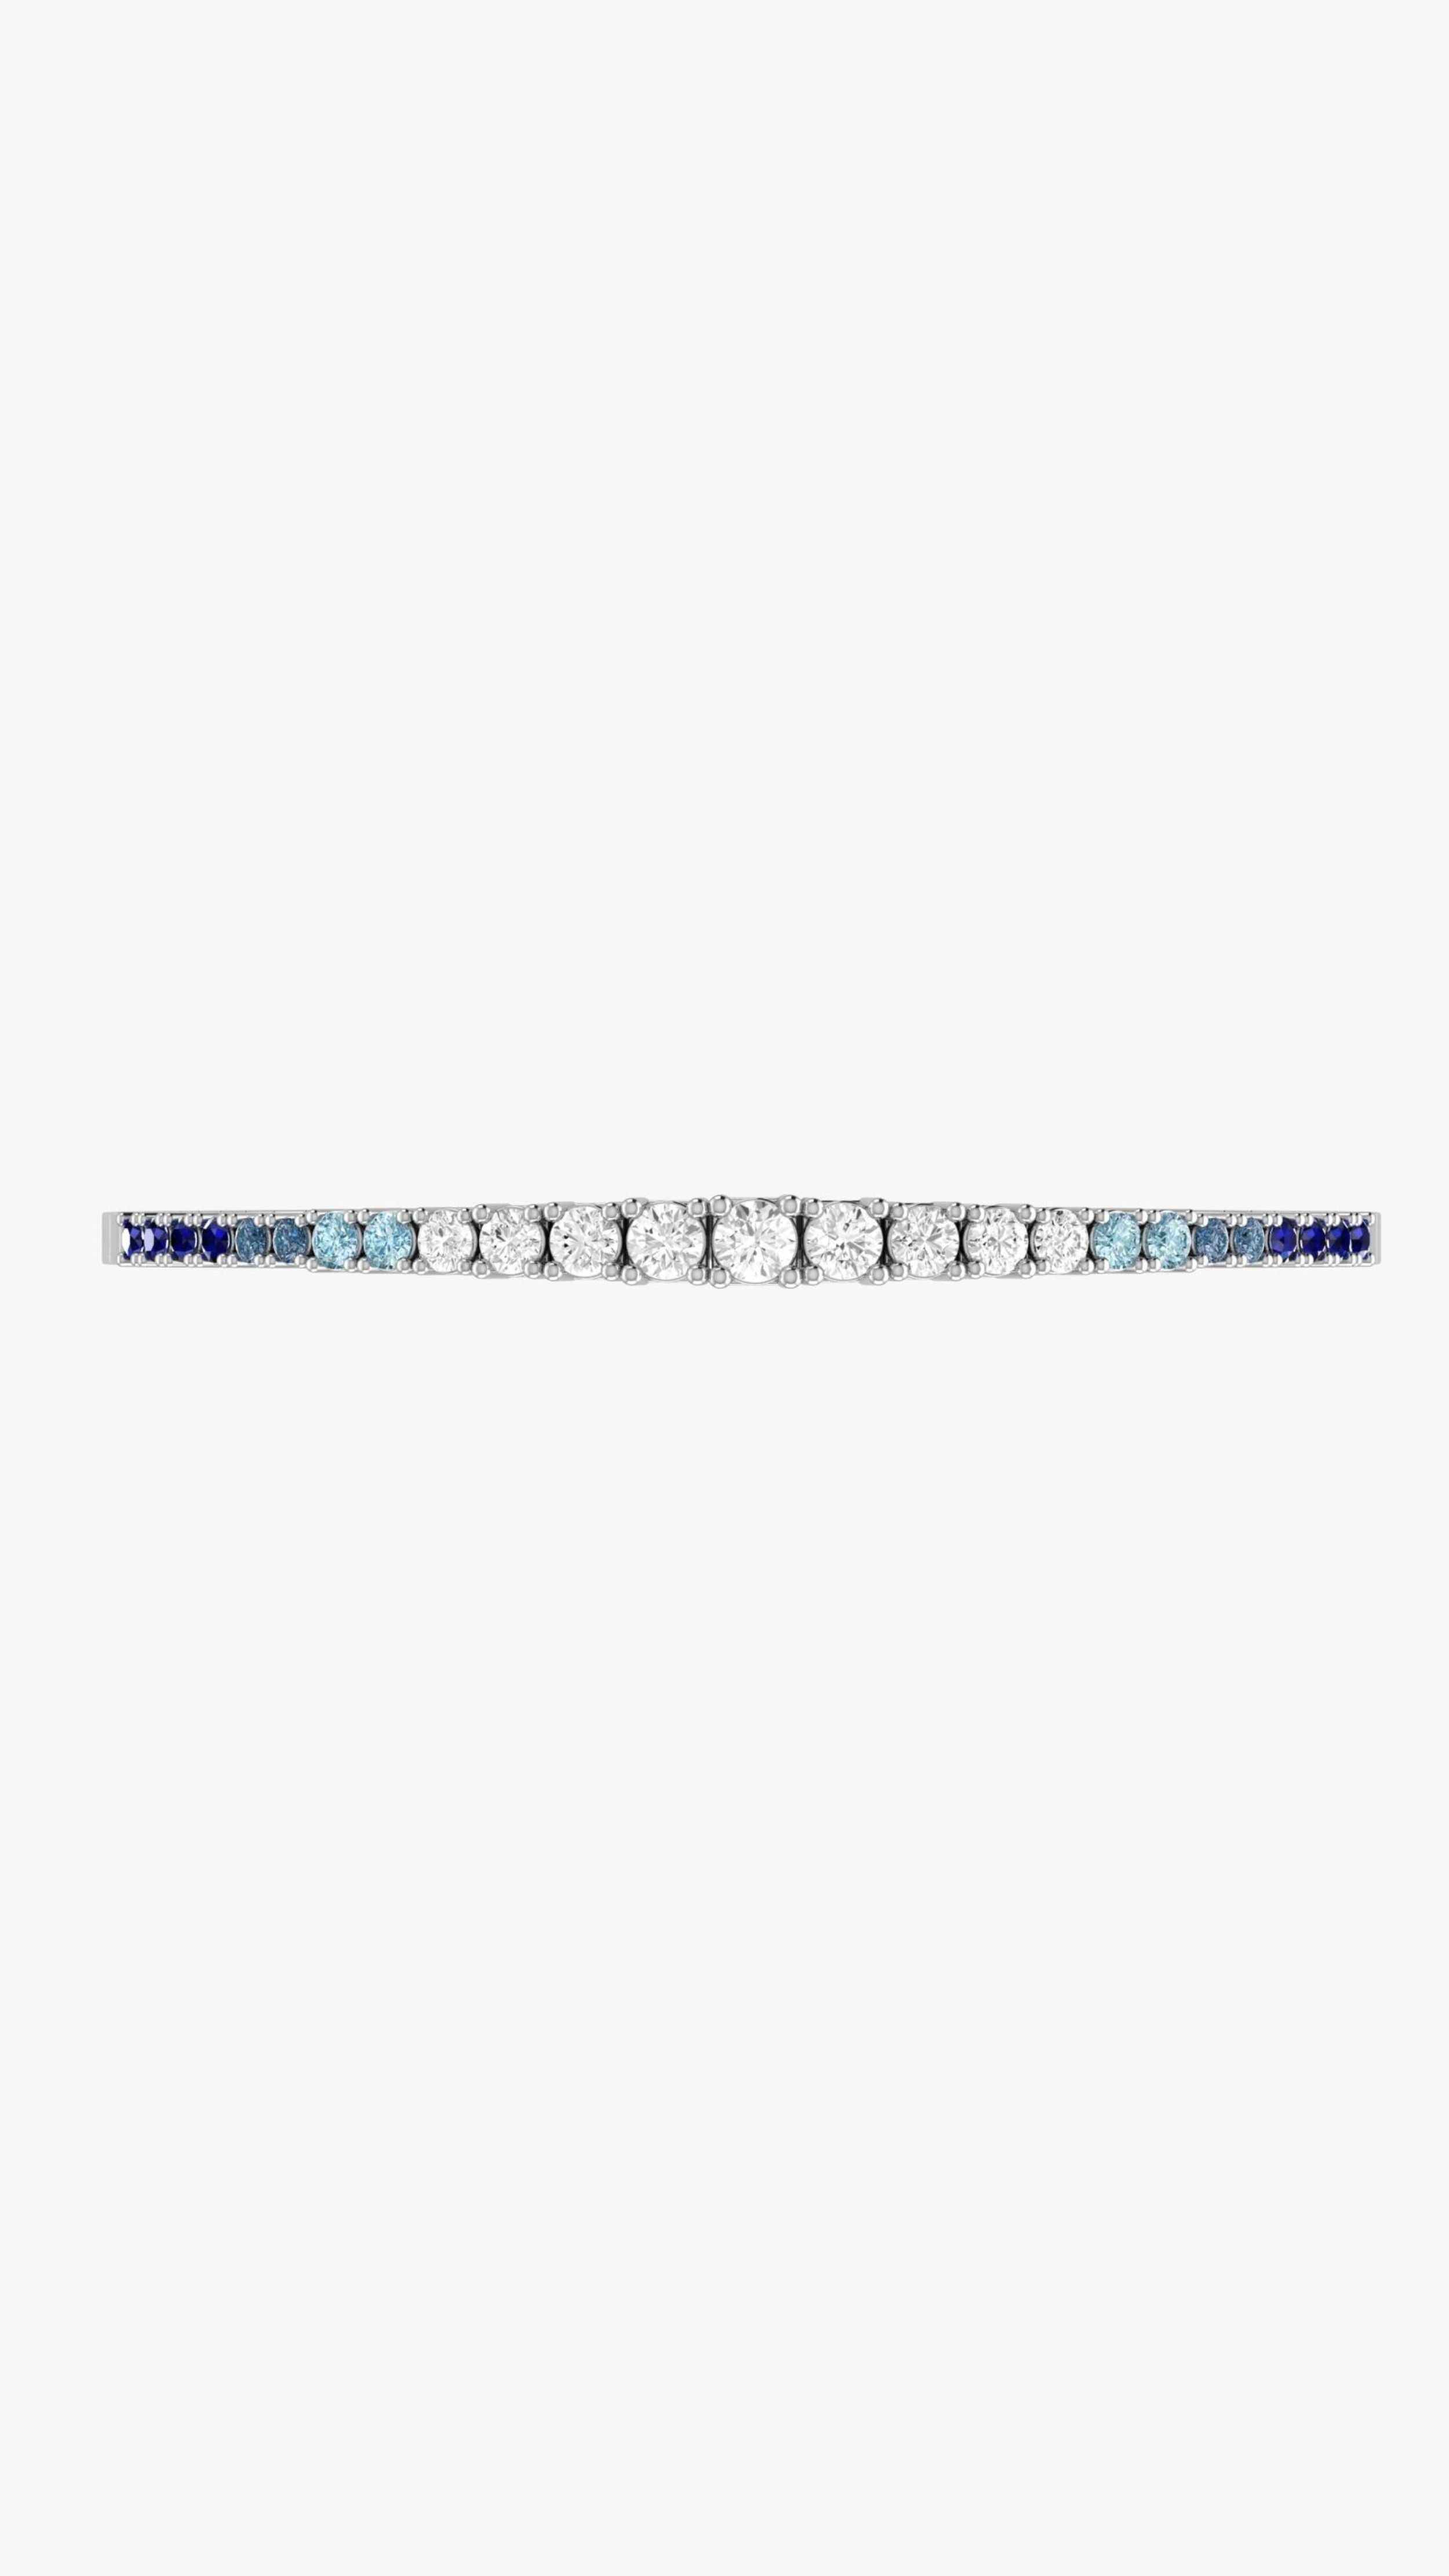 Condé de Diamante Sapphire Degradé Tennis Bracelet. whilte gold flexible tennis bracelet with diamonds and an ombre of blue sapphires. Product photo from the front.